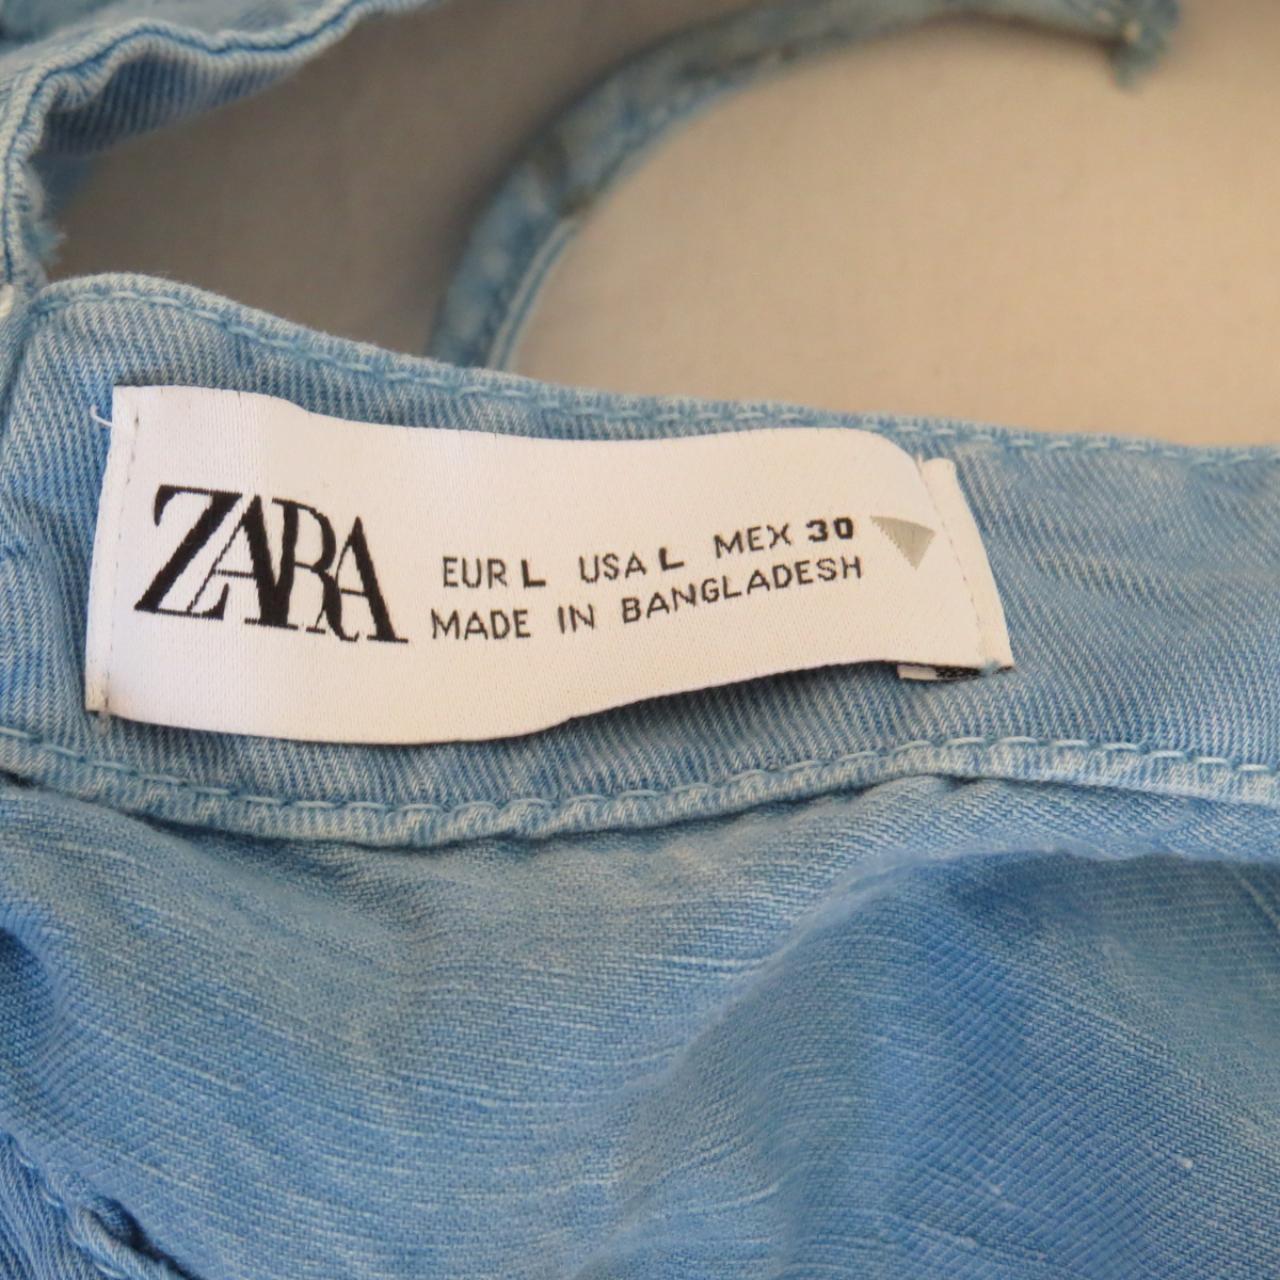 ZARA Linen Blend Top Size L Top made of linen blend... - Depop